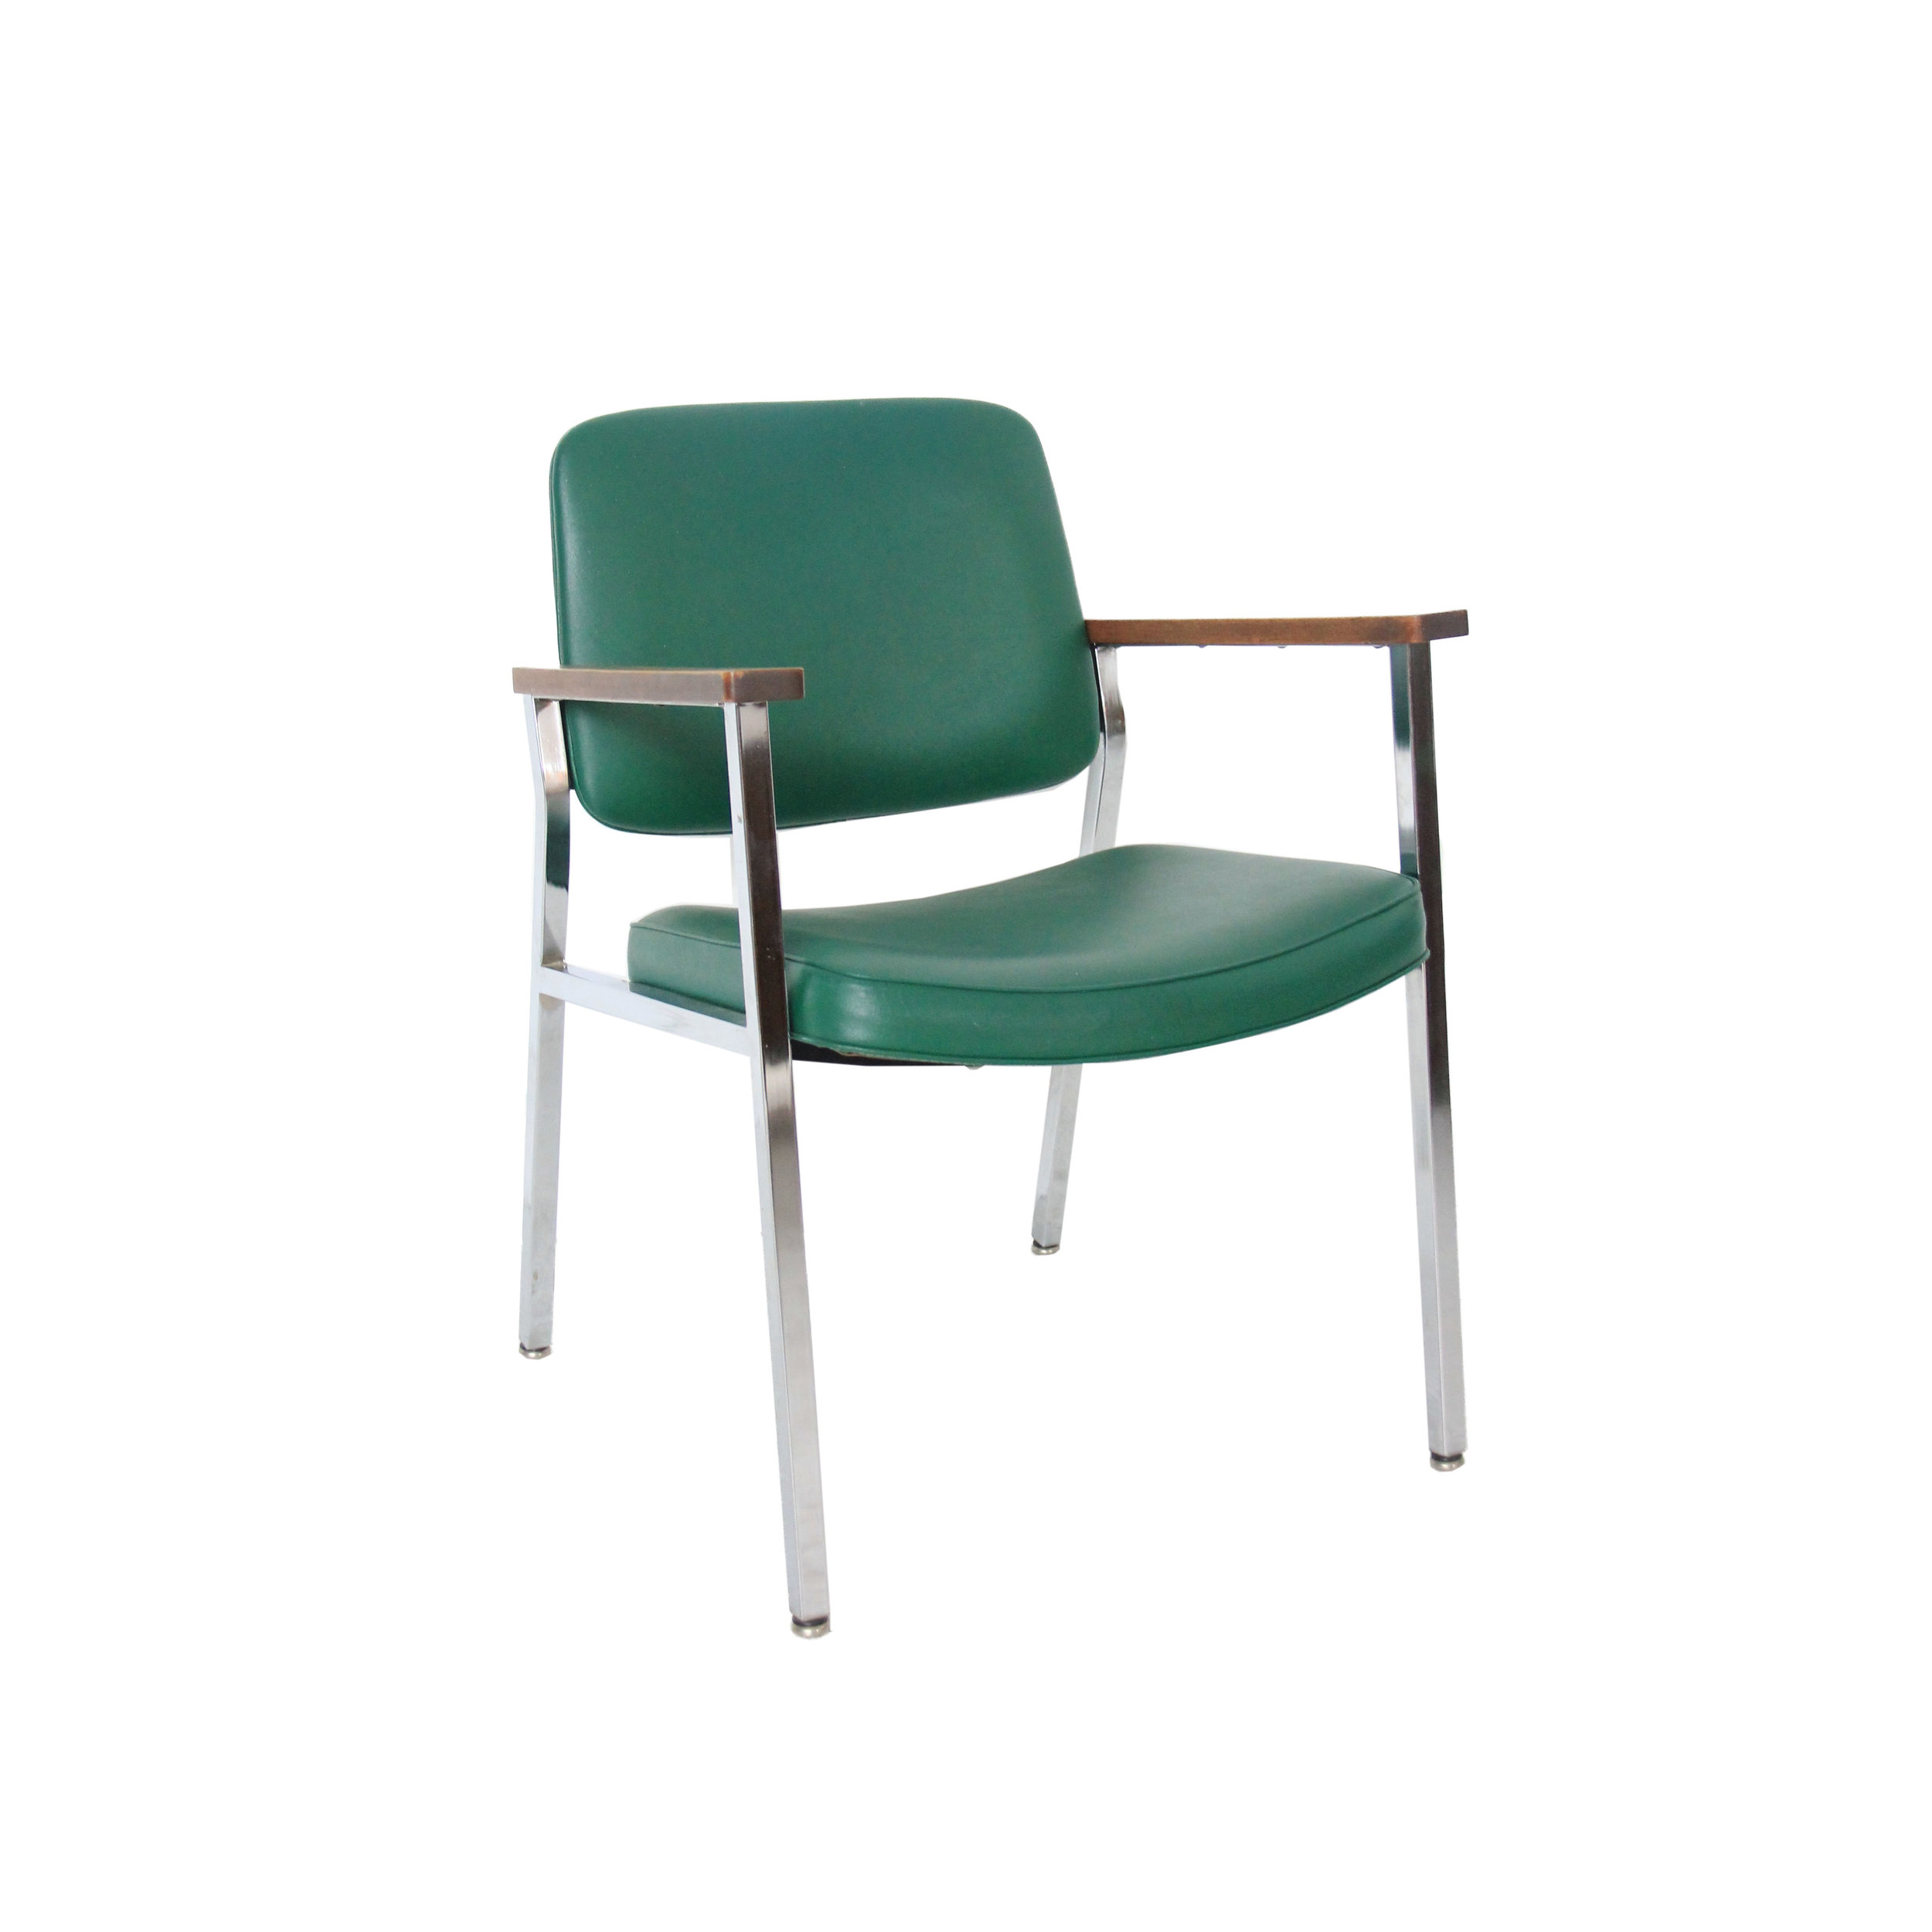 vintage industrial arm chair.jpg